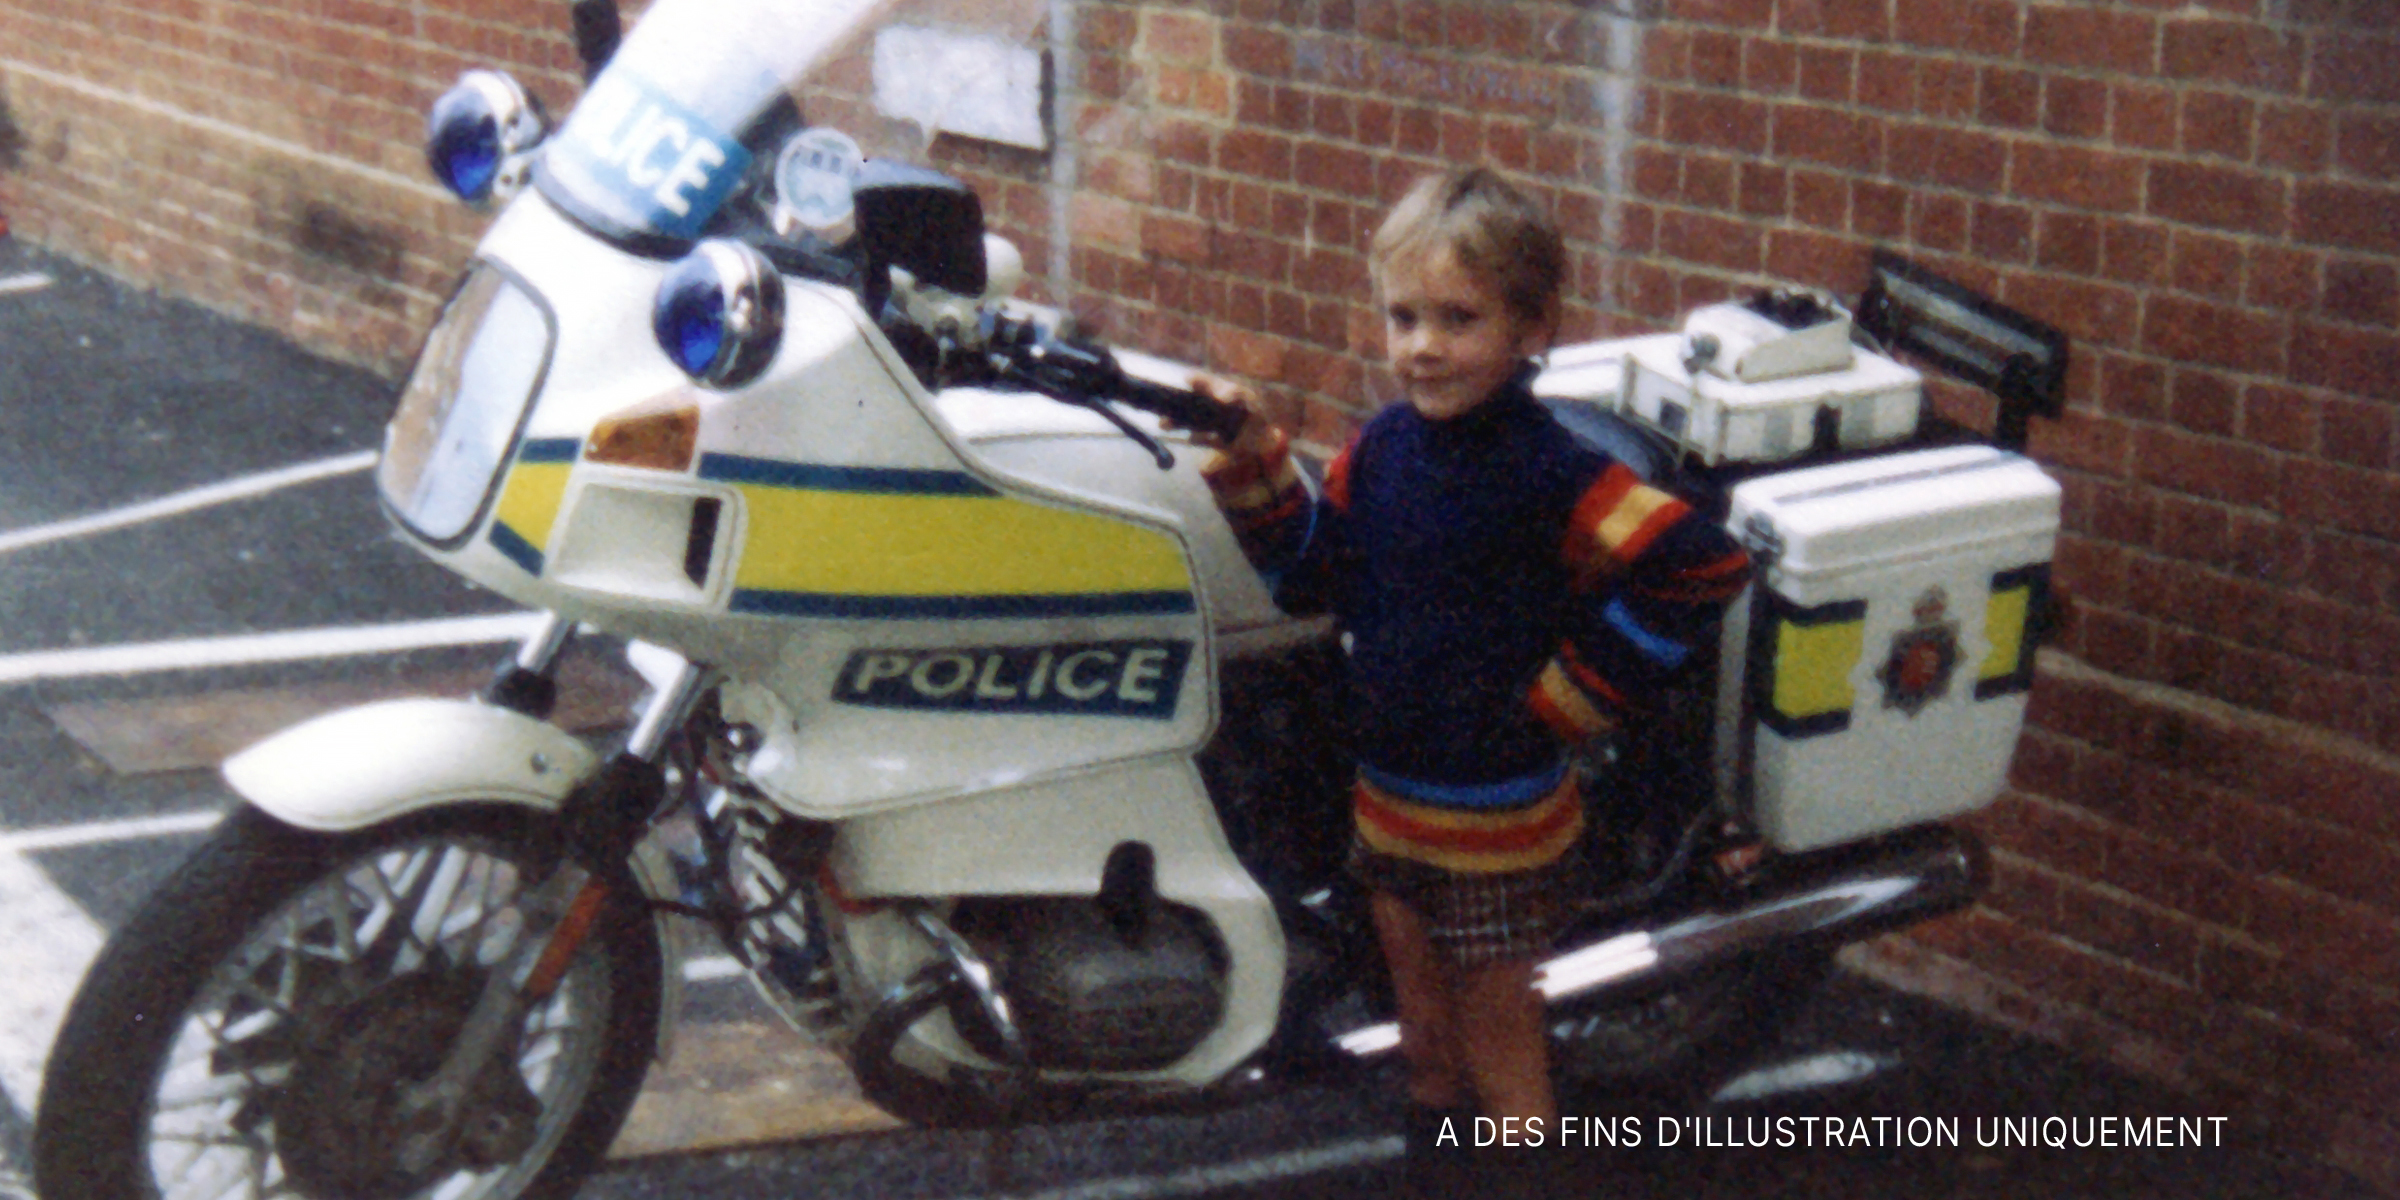 Un enfant à côté d'un vélo de police | Source : Flickr / simon_music (CC BY-SA 2.0)